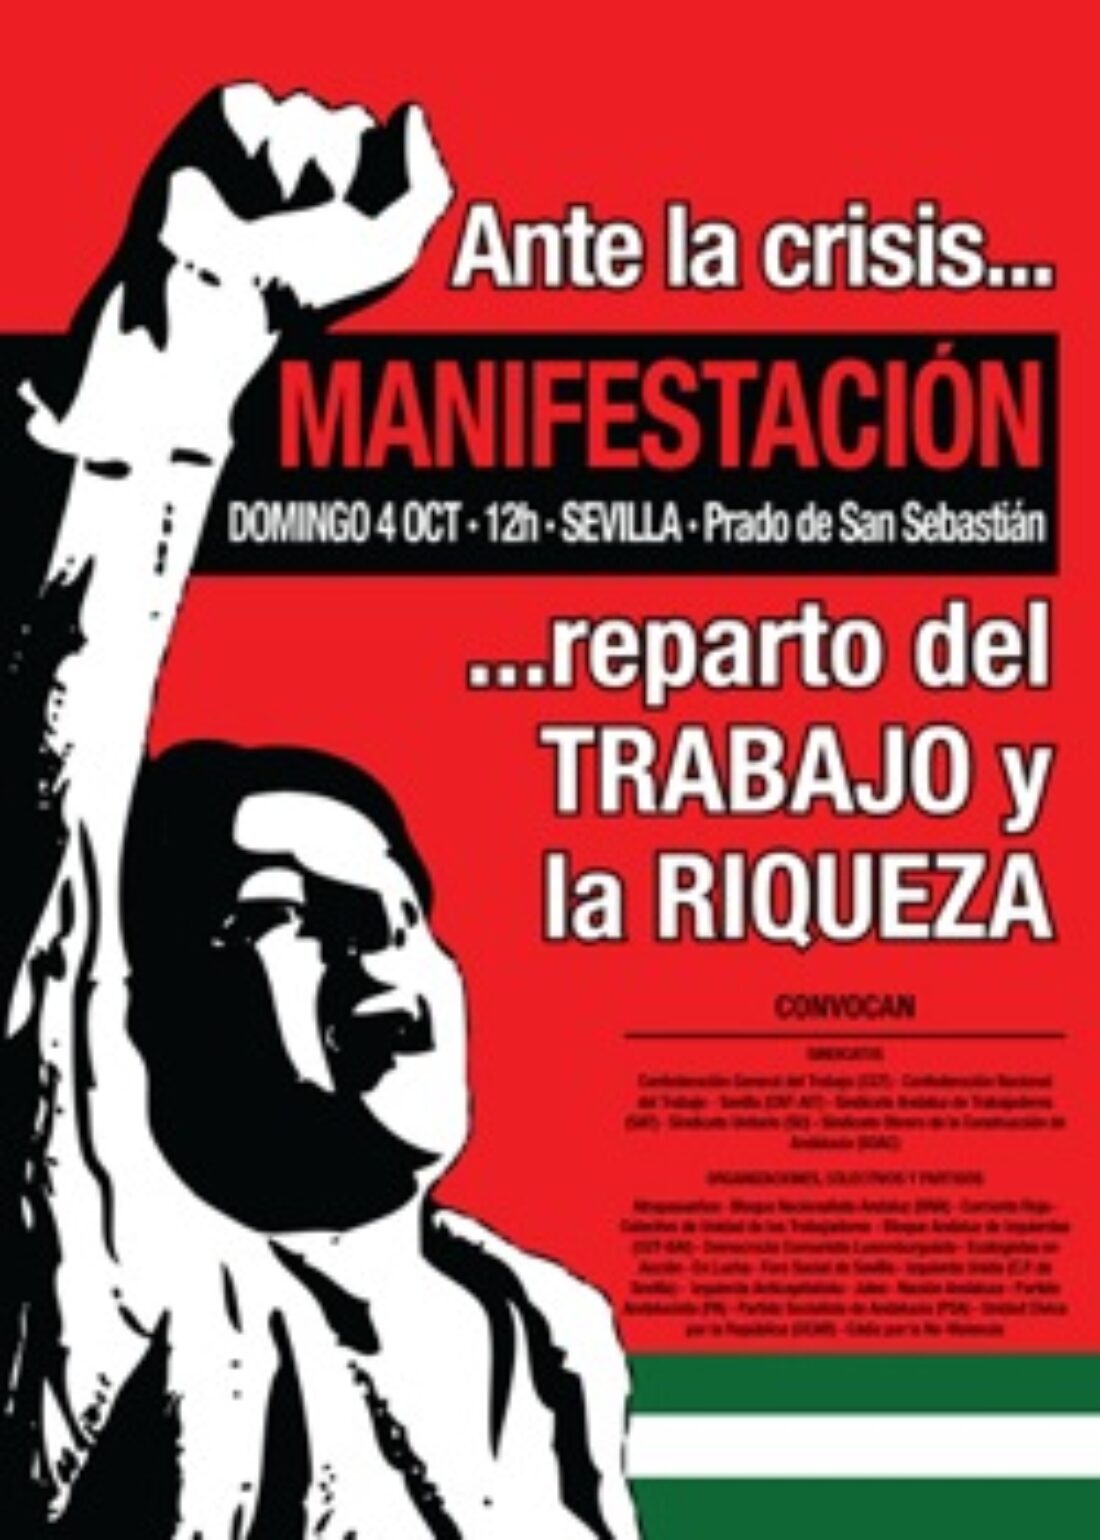 4 octubre, Sevilla : Manifestación «Ante la Crisis, Reparto del Trabajo y la Riqueza»